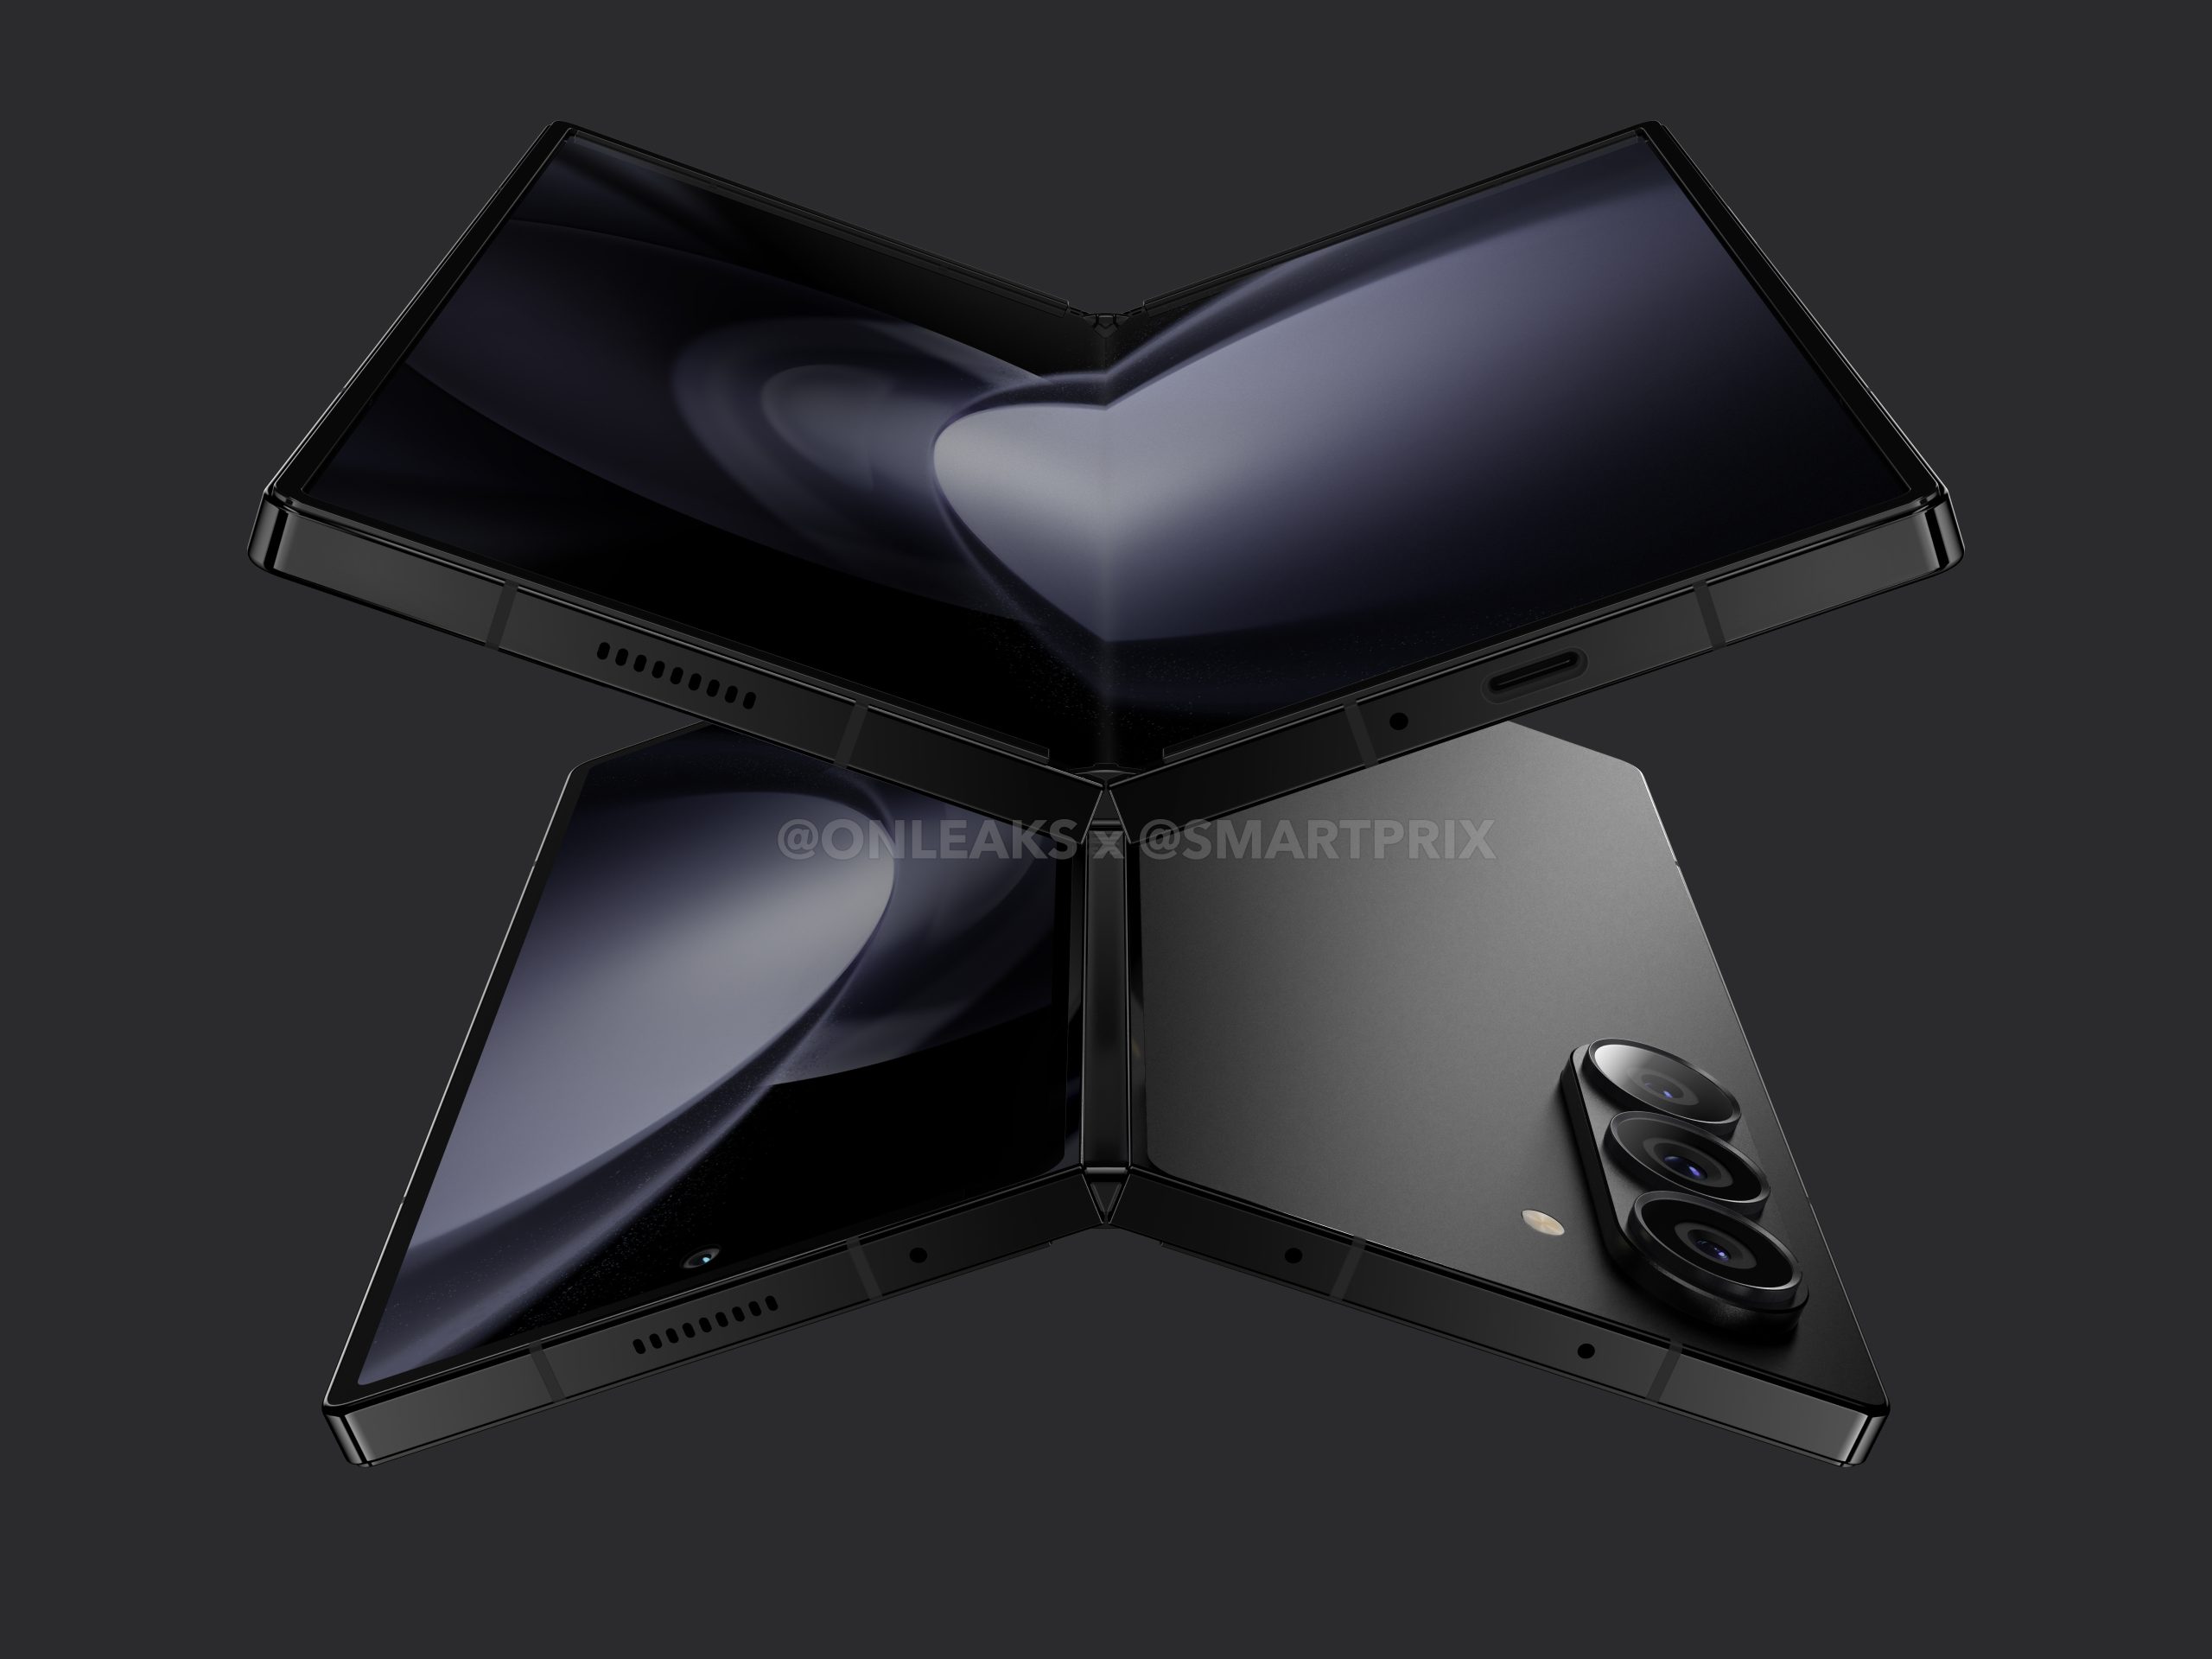 Informator ujawnił, jak będzie wyglądał składany smartfon Samsung Galaxy Fold 6